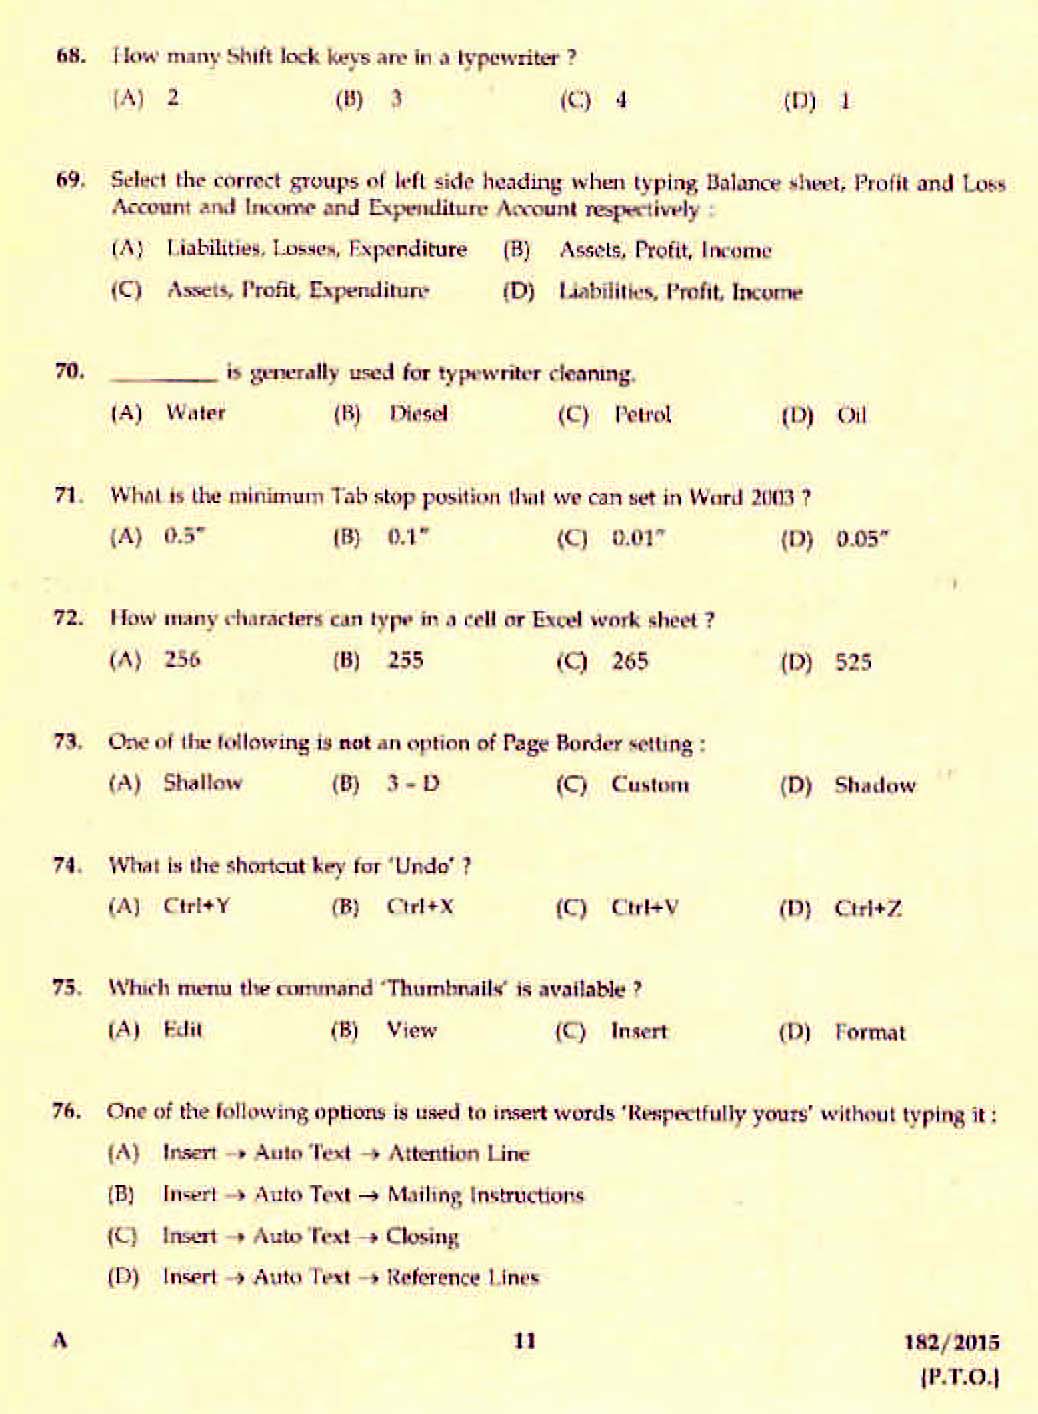 Kerala PSC Confidential Assistant Grade II Exam 2015 Question Paper Code 1822015 9